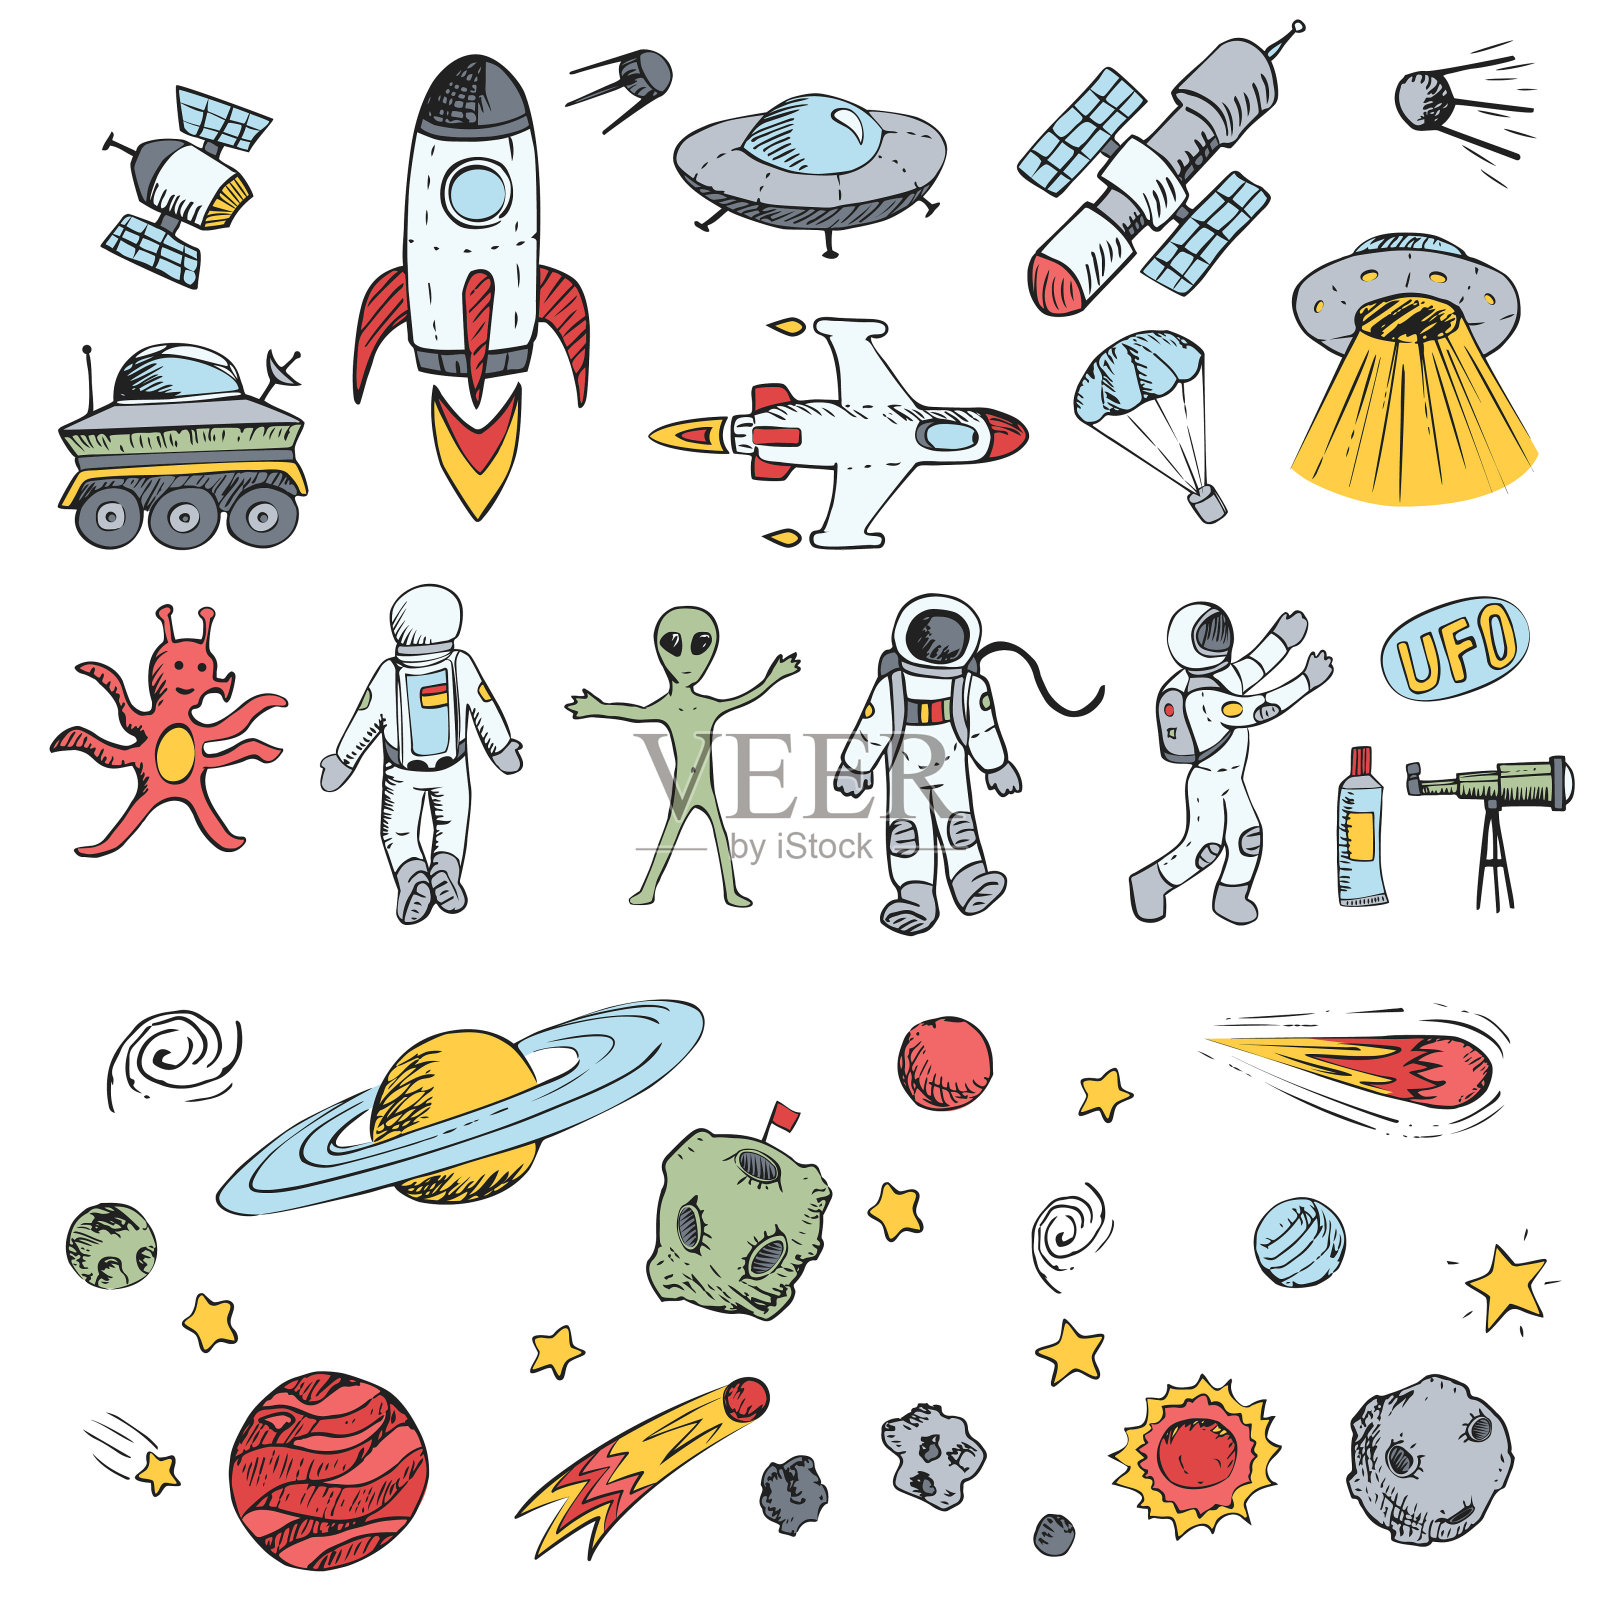 彩色矢量手绘涂鸦卡通设置空间对象。宇宙飞船、火箭、行星、飞碟、宇航员、星星、彗星、卫星、ufo等。设计元素图片